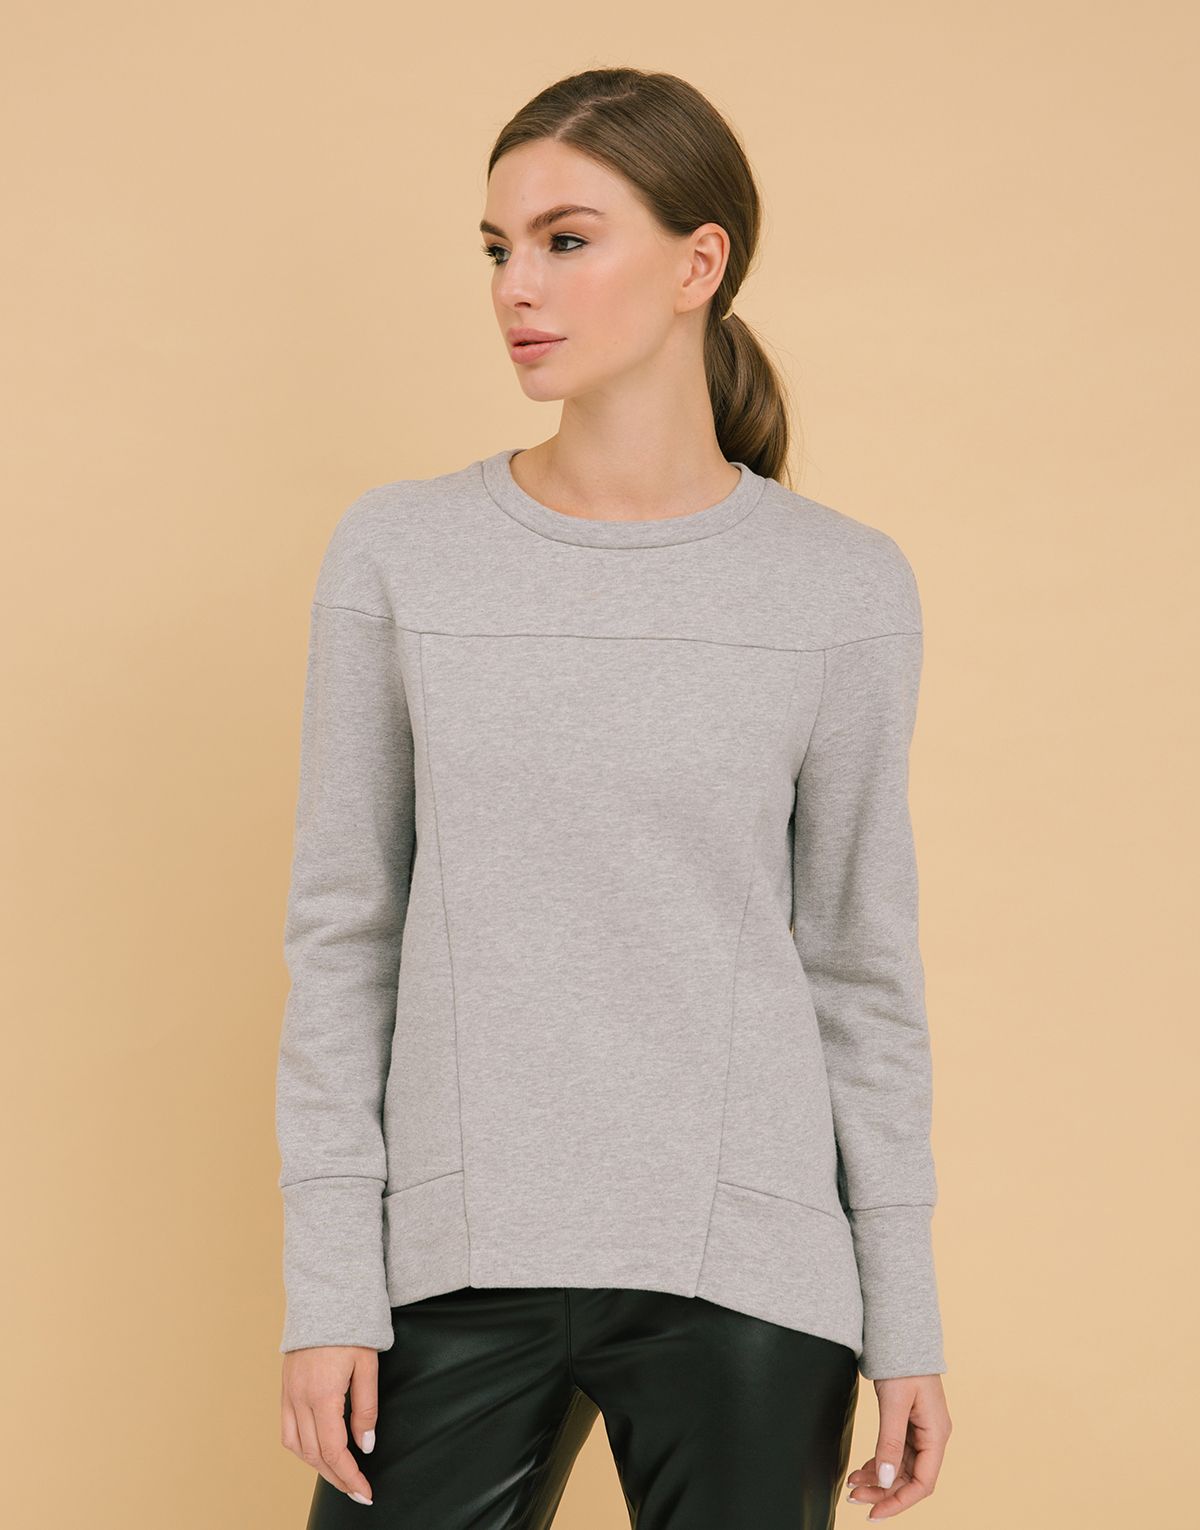 Sweatshirt, pattern №417